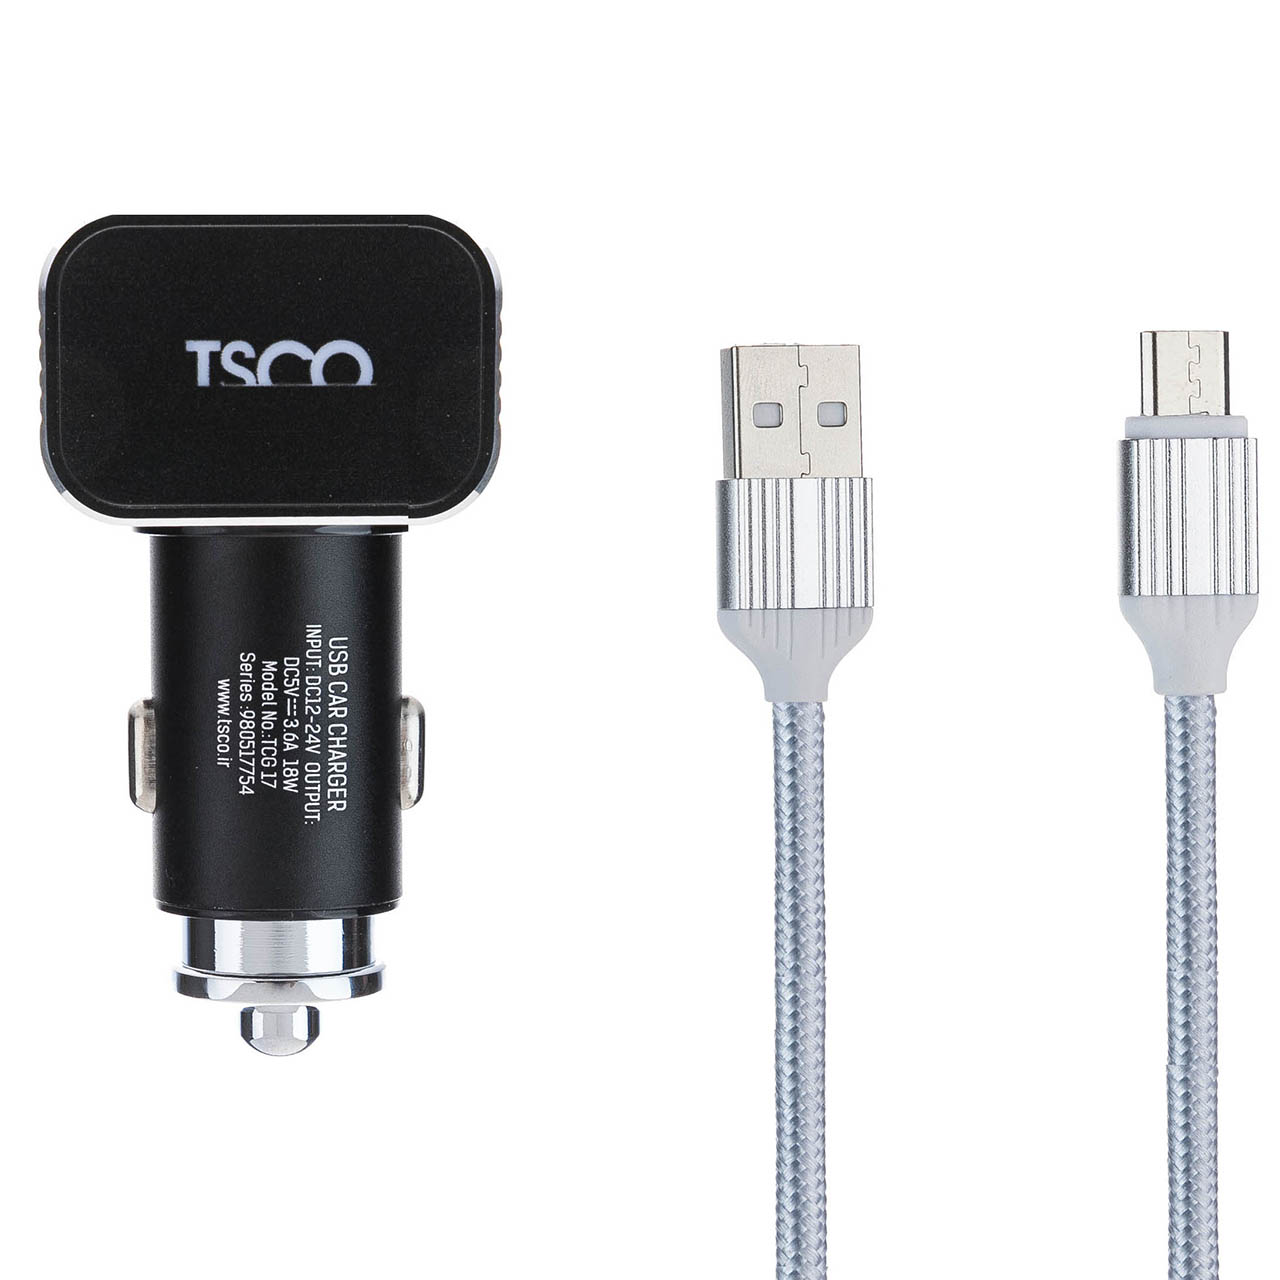 شارژر فندکی تسکو مدل TCG 17 به همراه کابل تبدیل USB به microUSB